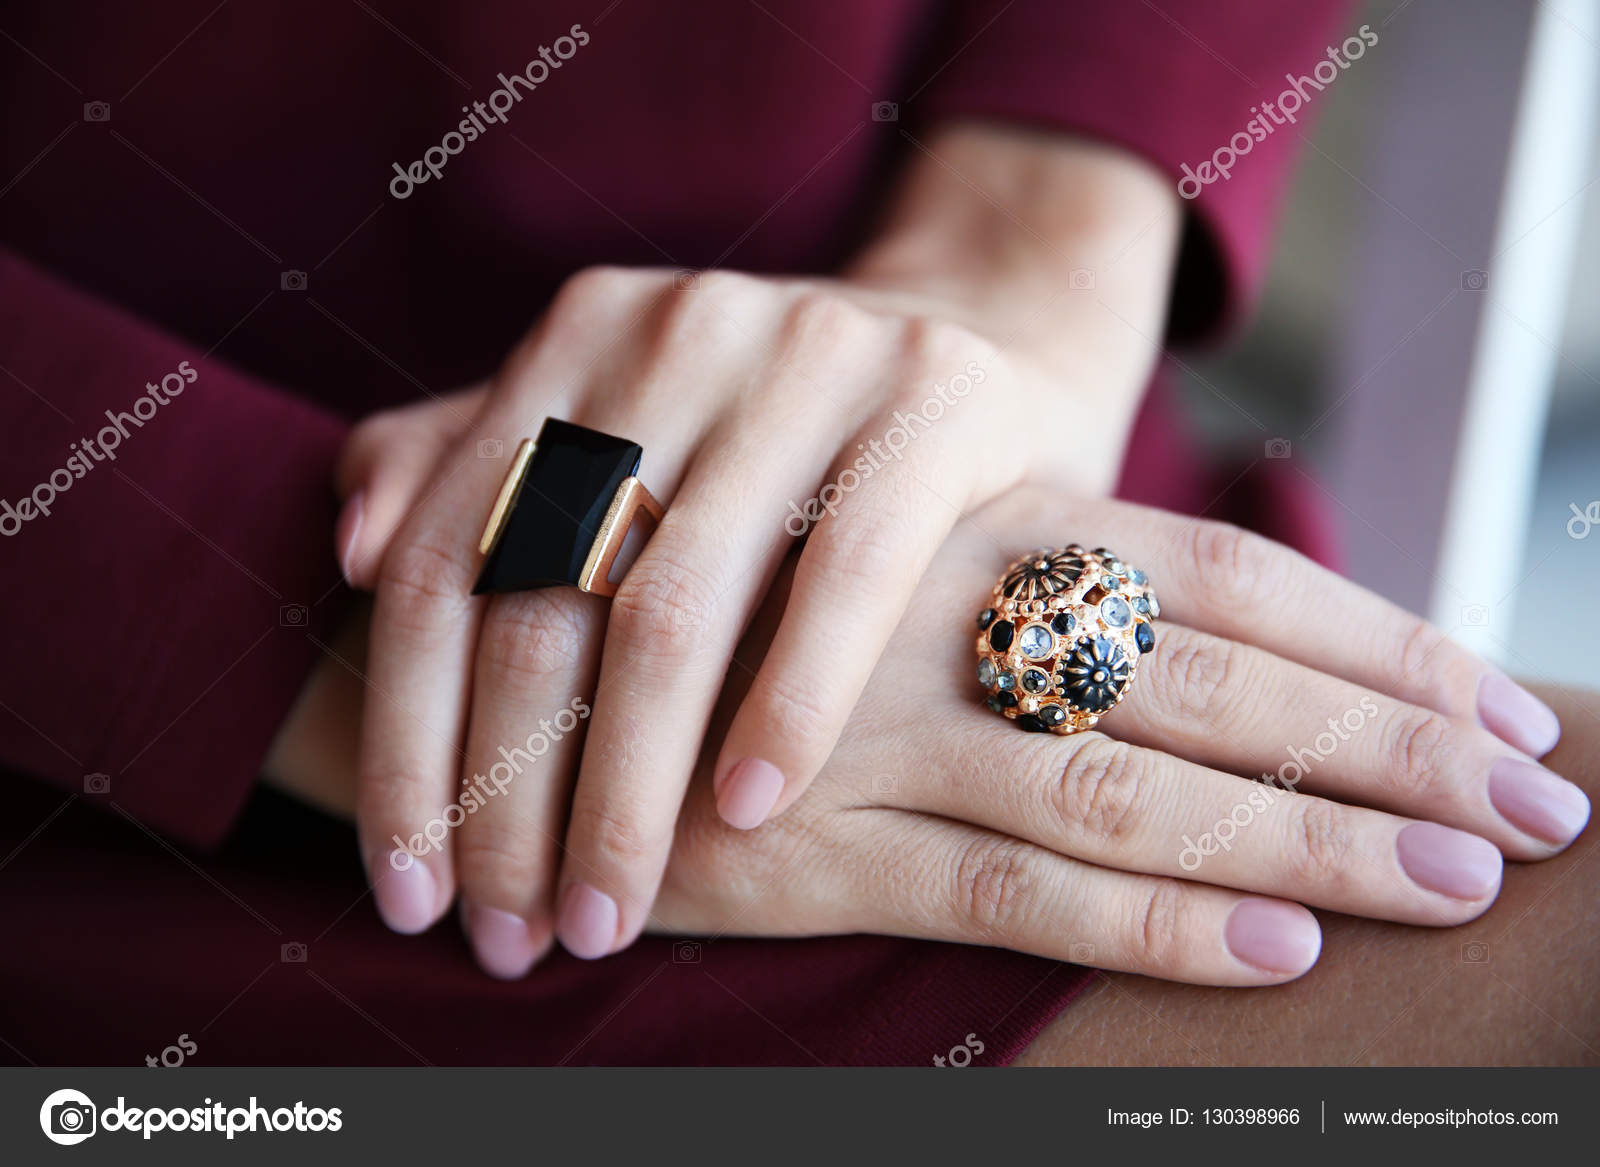 Rings that create beautiful hands | Danks Copenhagen | Jewellery